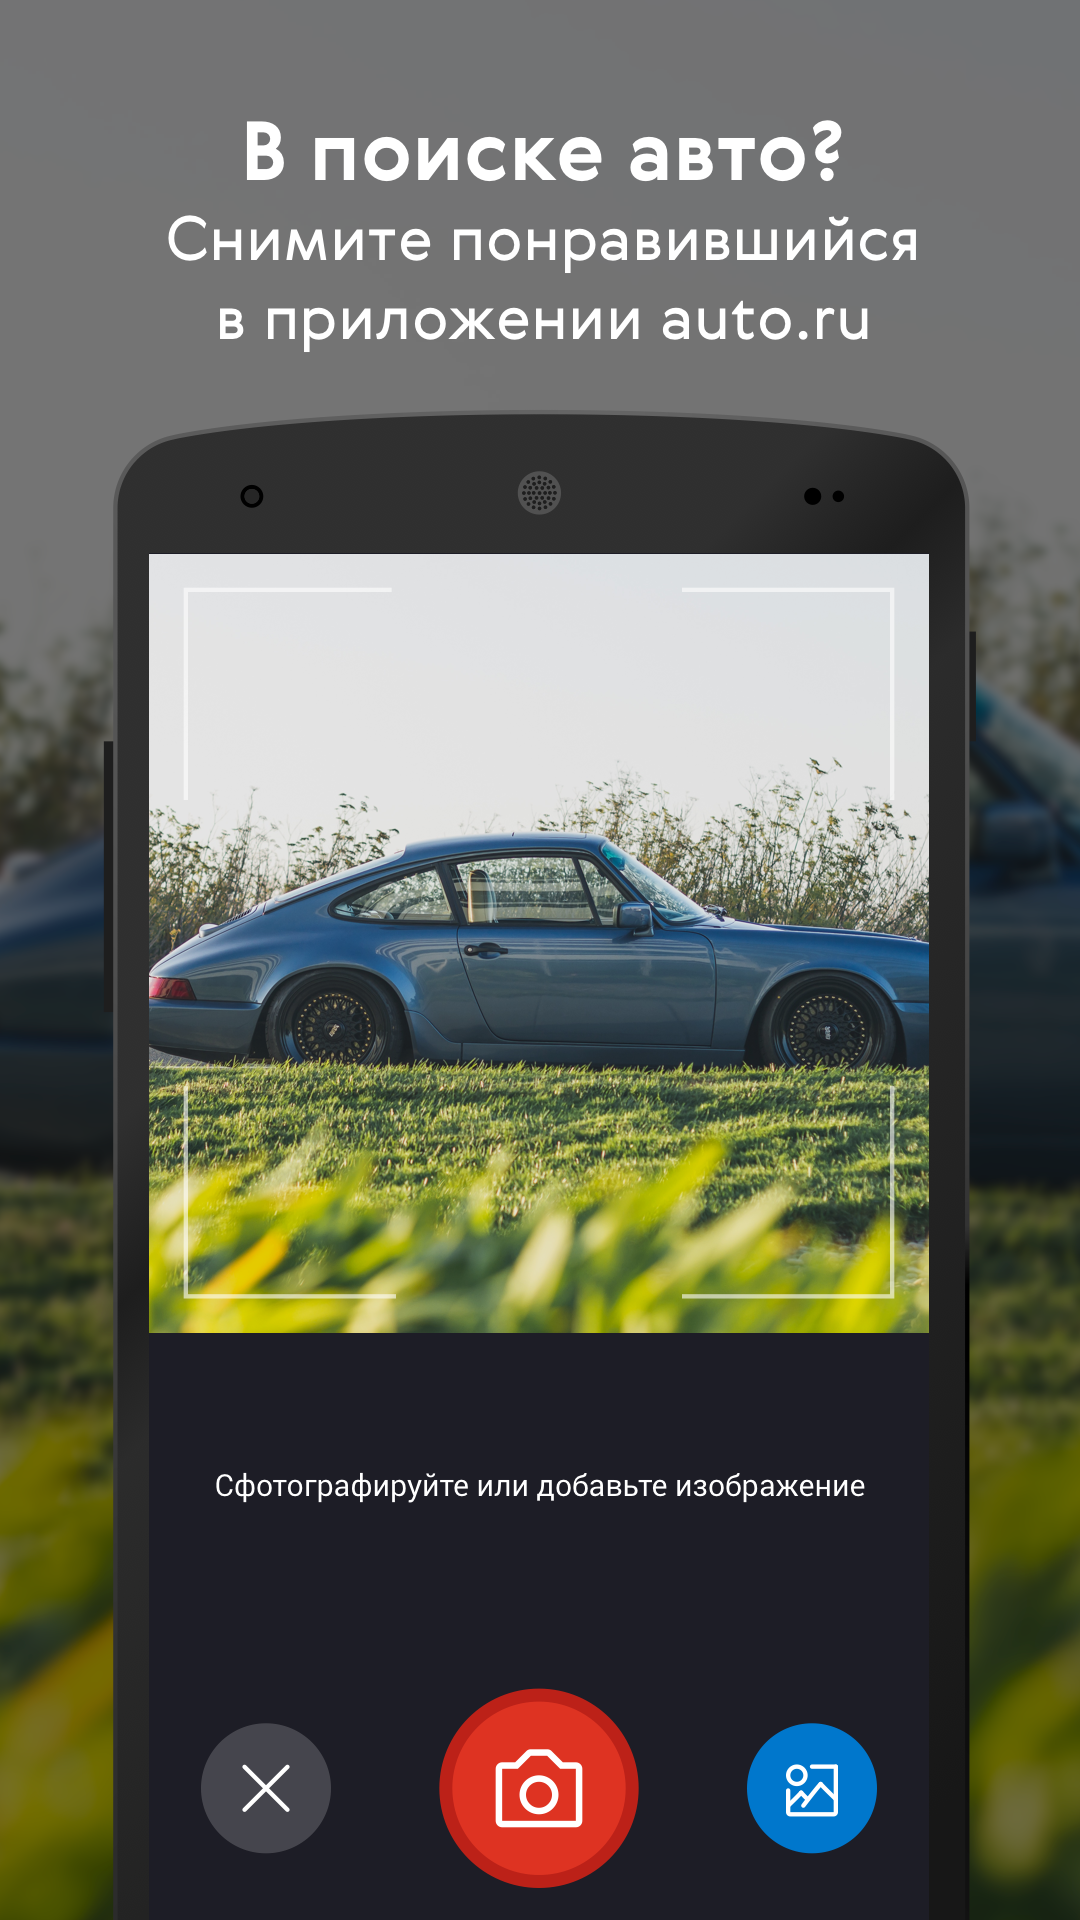 Android application Авто.ру: купить и продать авто screenshort